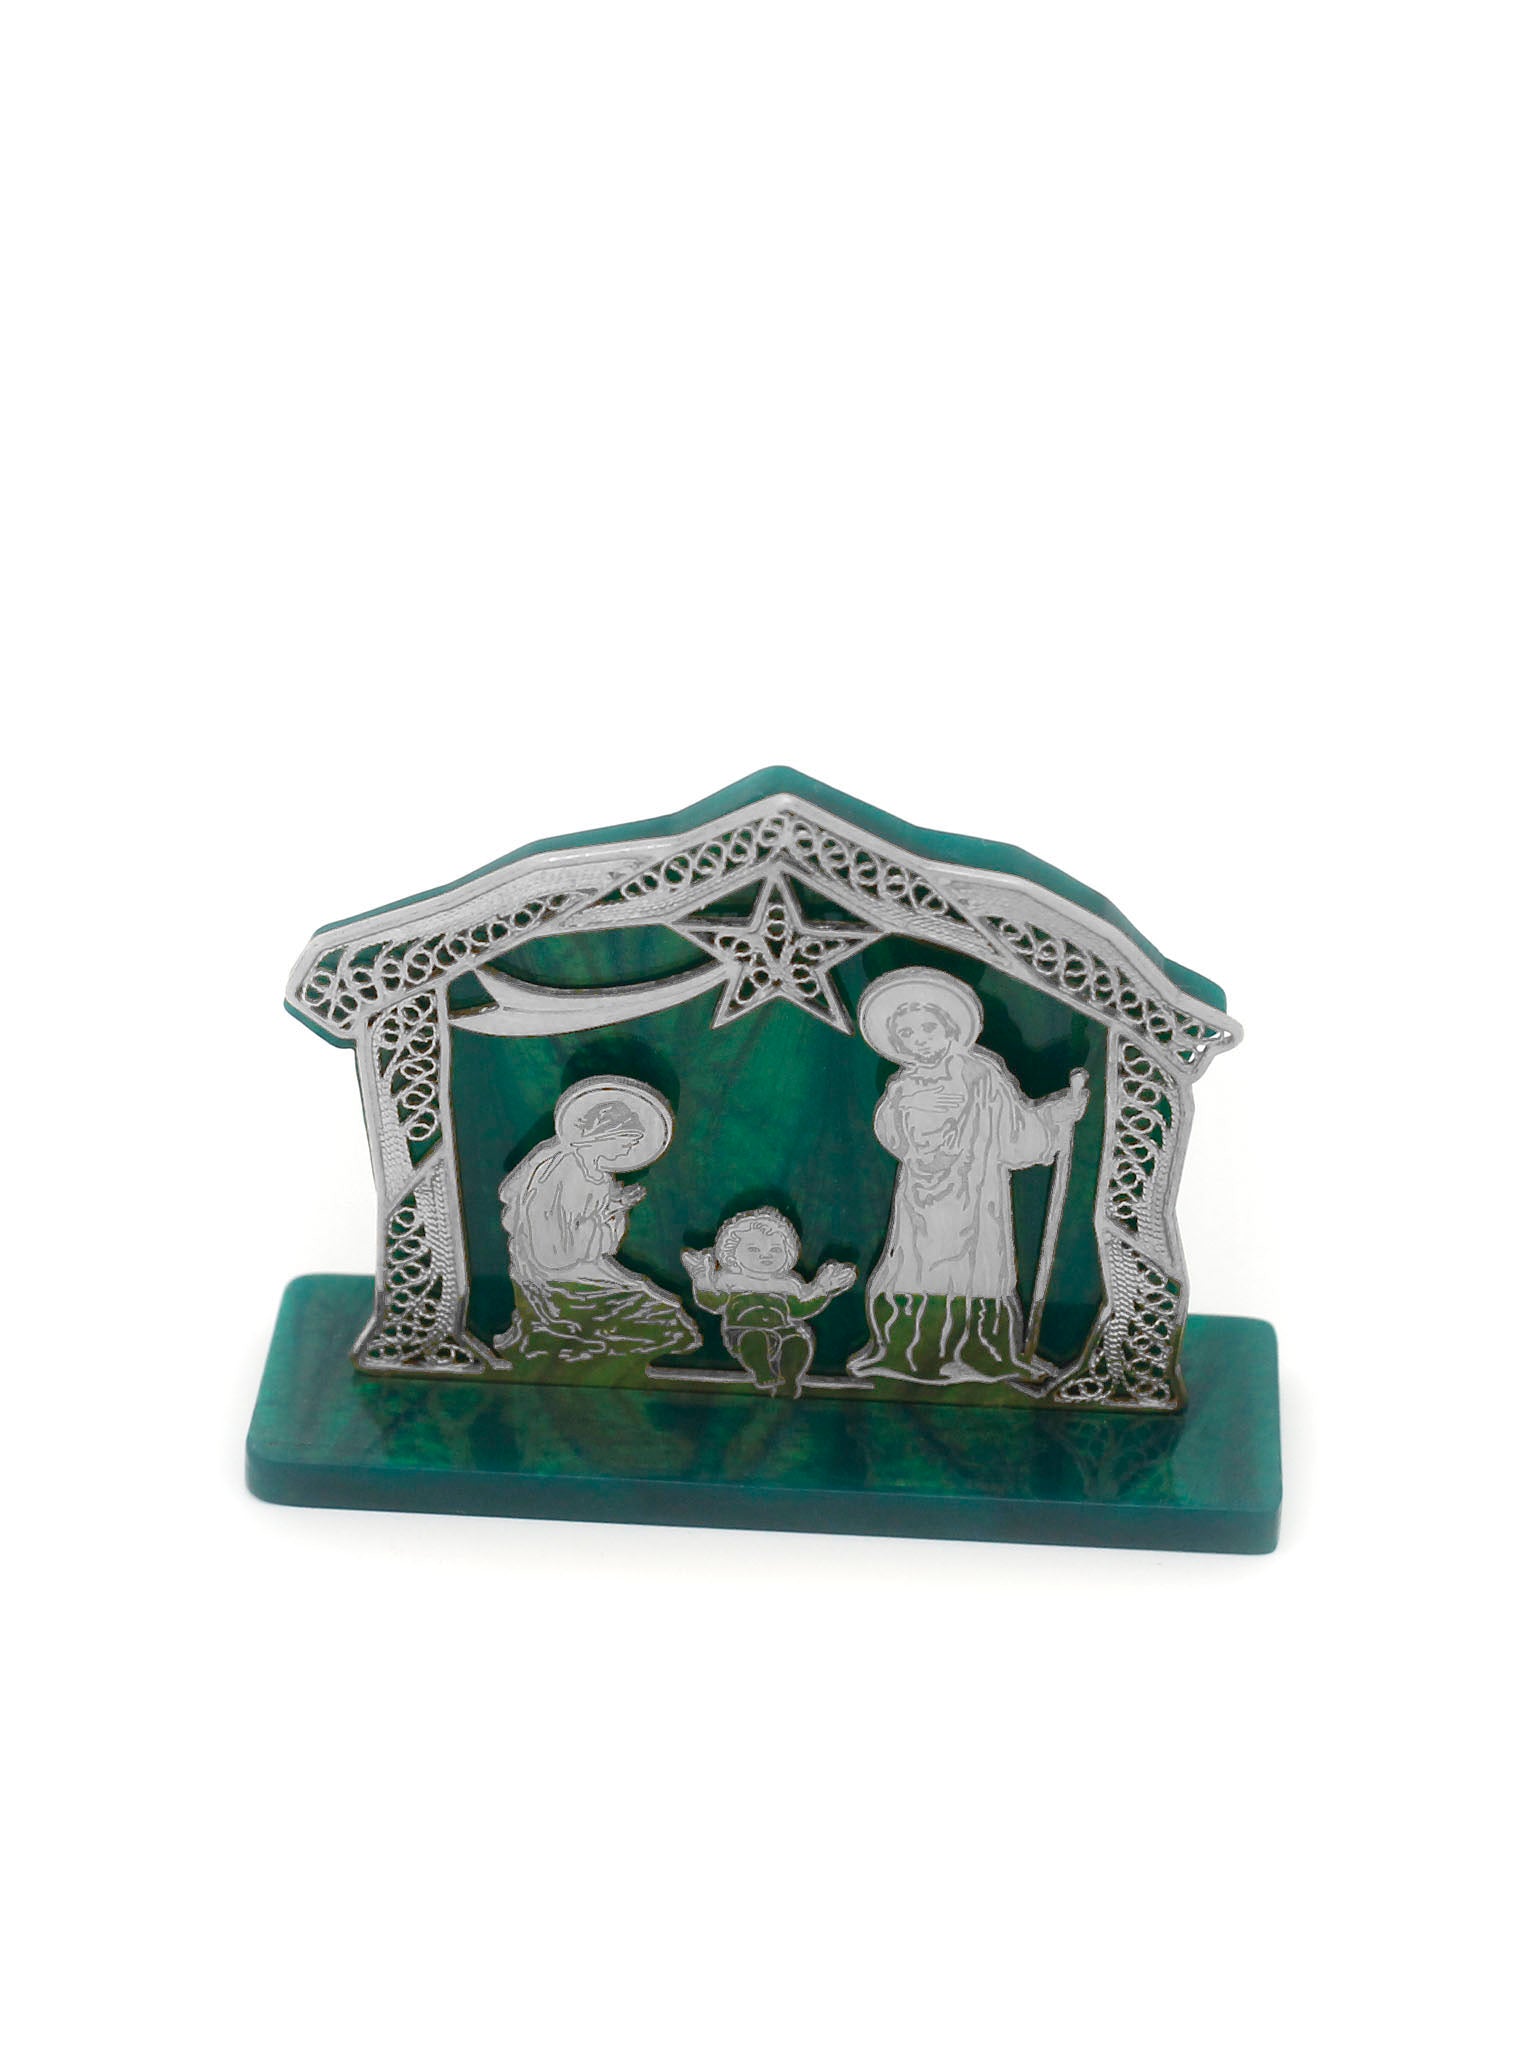 Filigree nativity scene on acrylic base and background